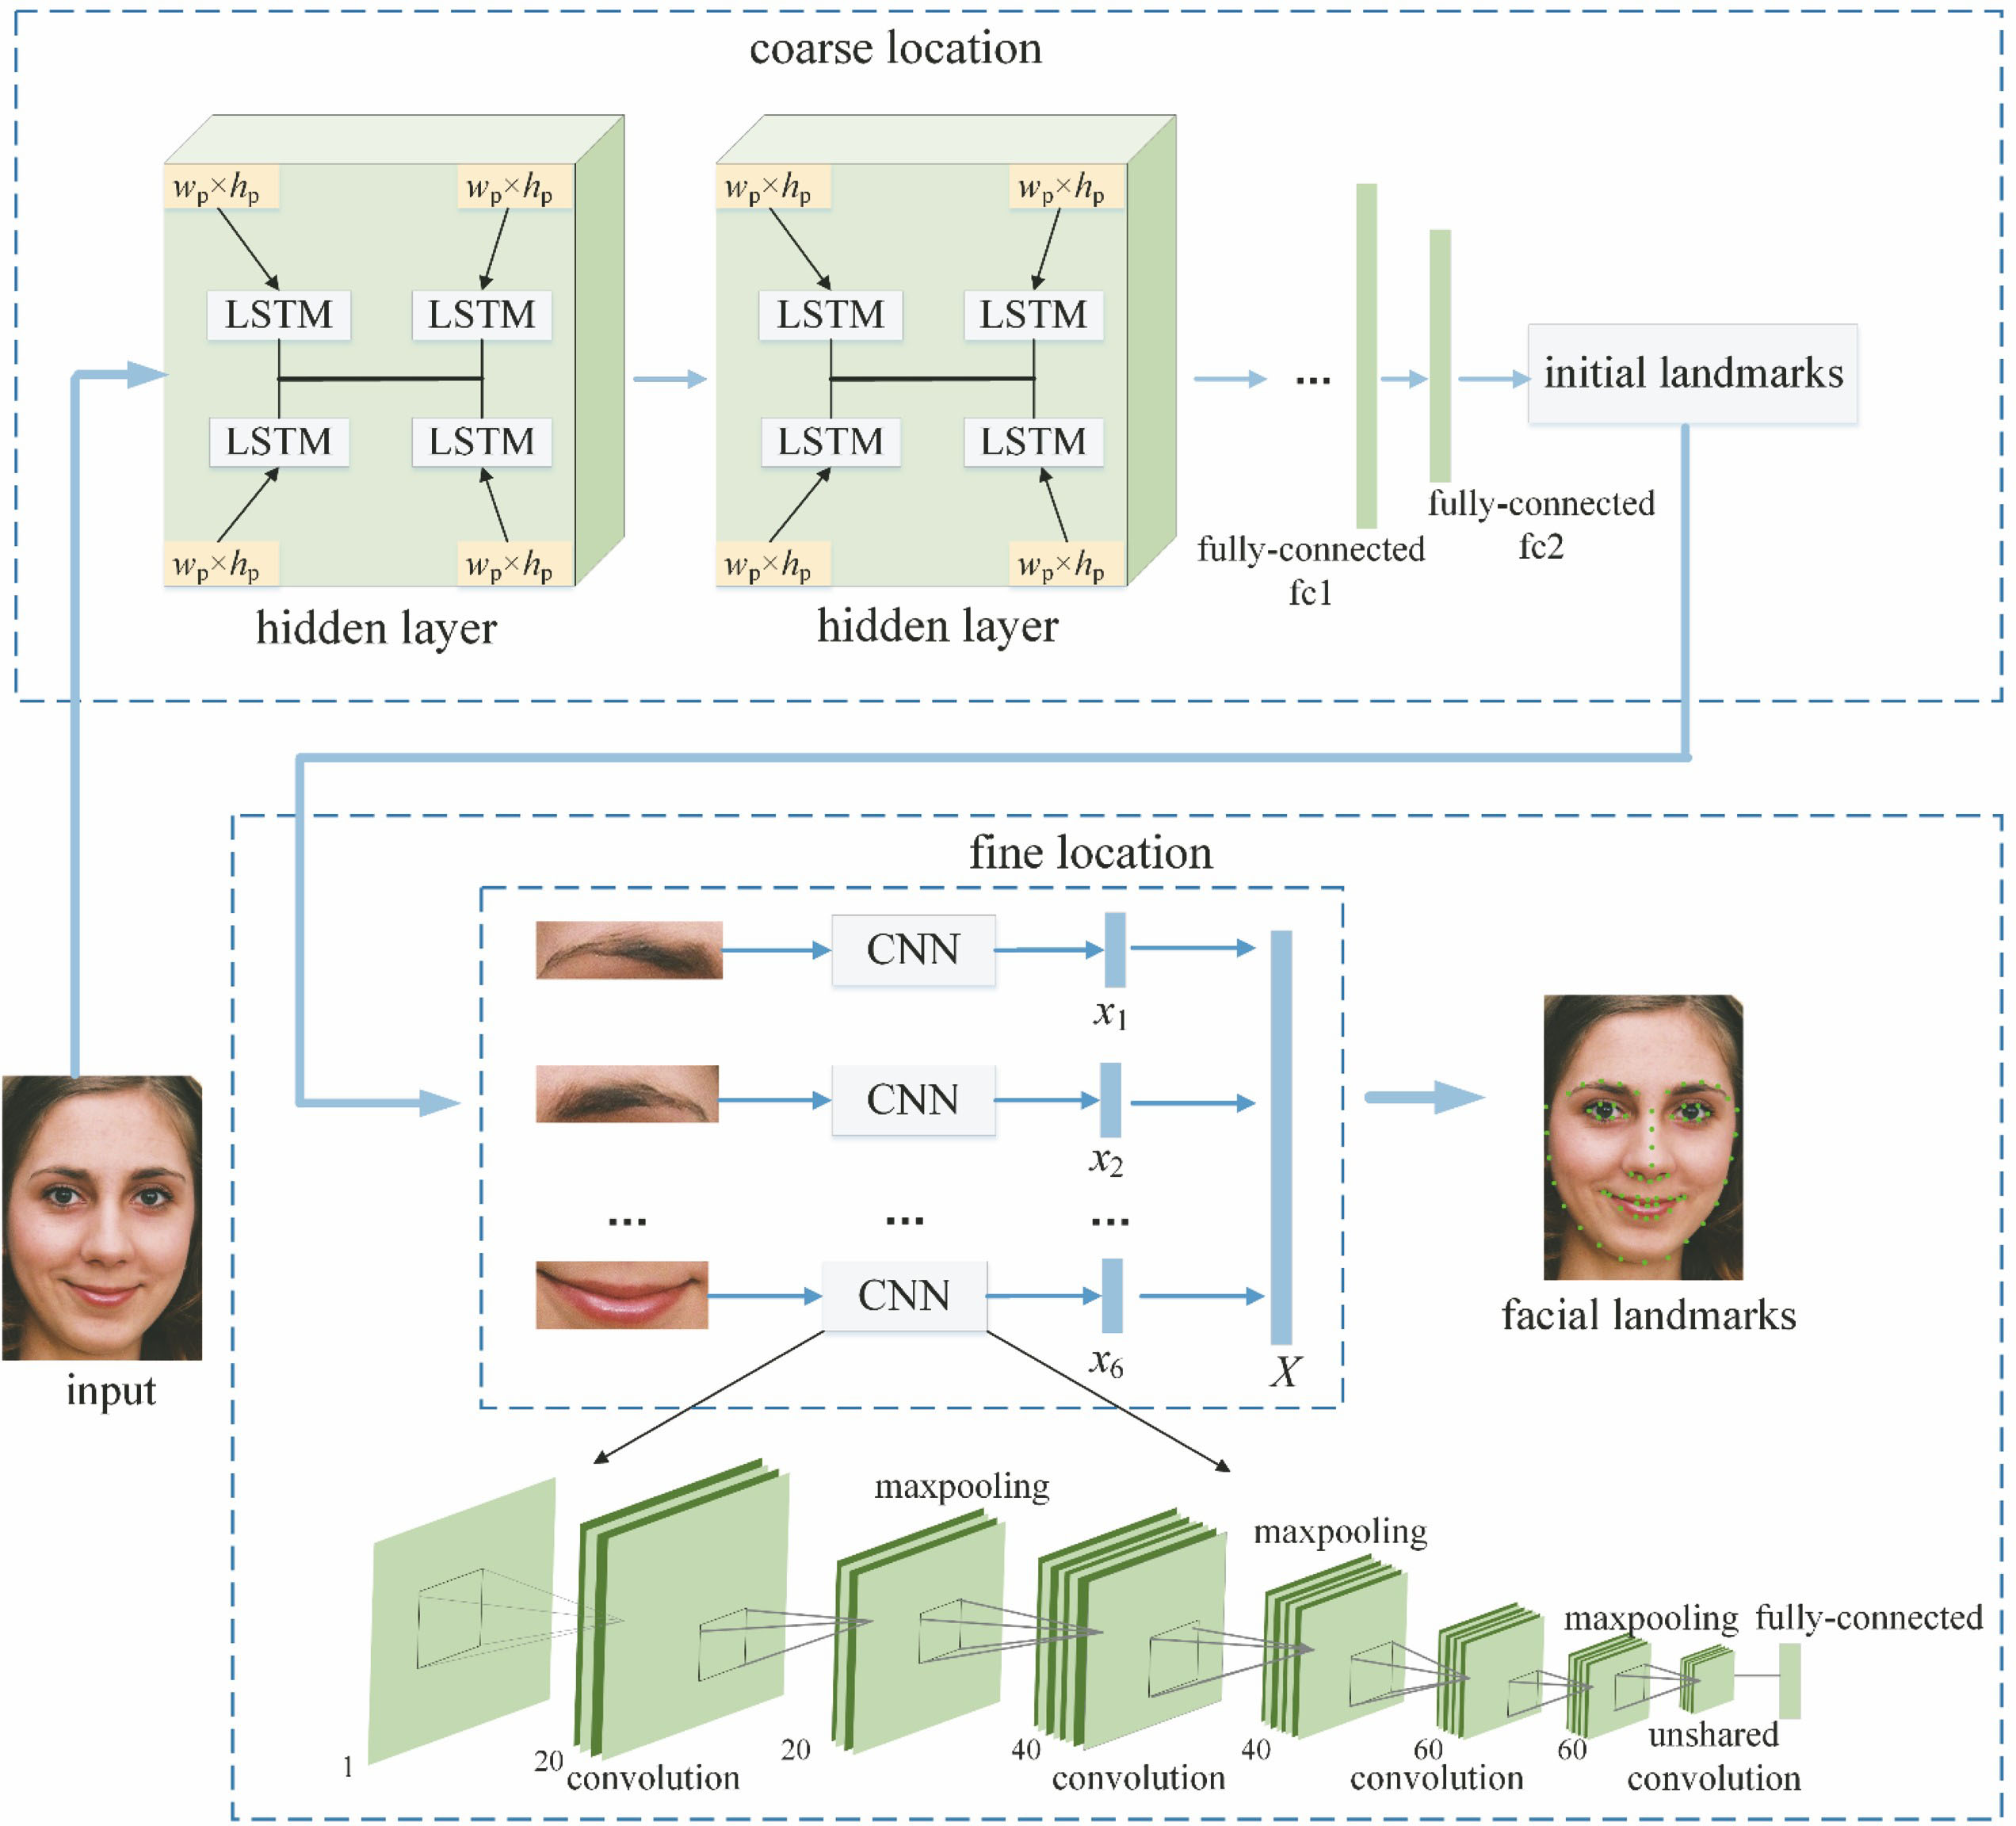 Framework of face landmark location based on LCCDN model